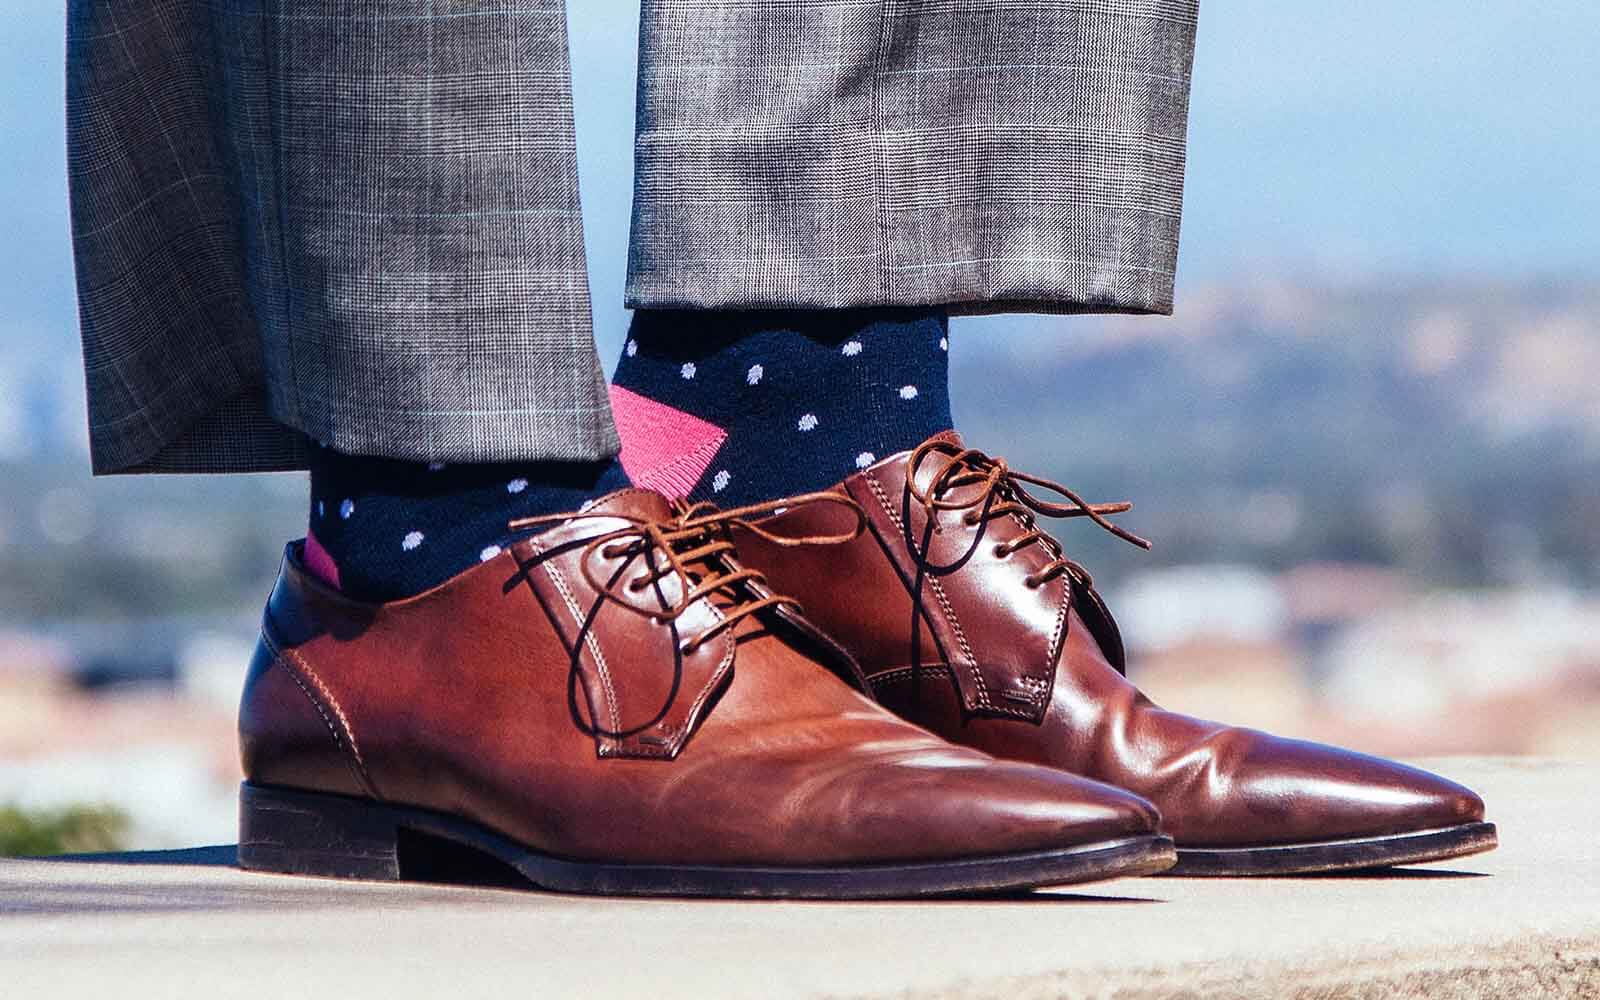 mens ankle length dress socks